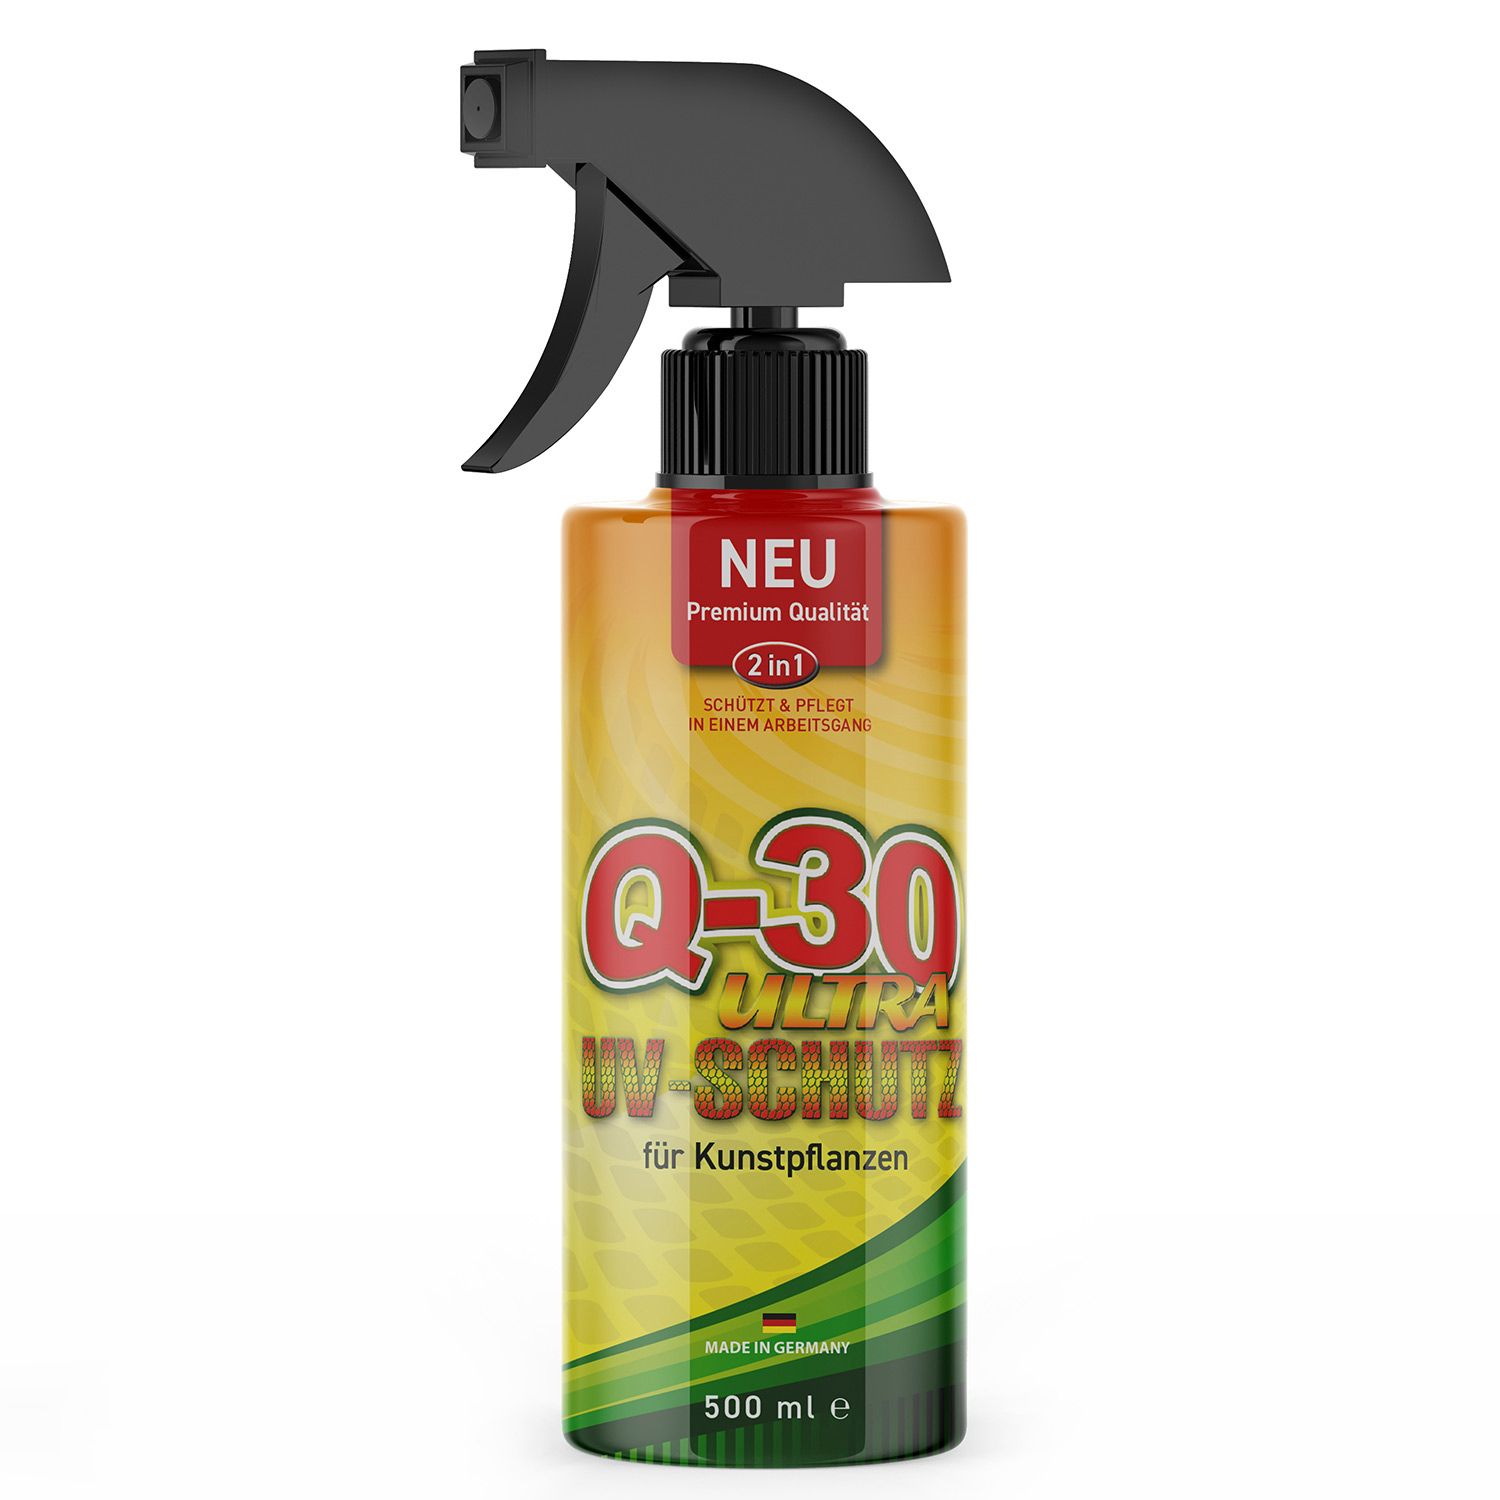 Q-30 Ultra UV-Schutz 500ml für Kunstpflanzen im Außenbereich